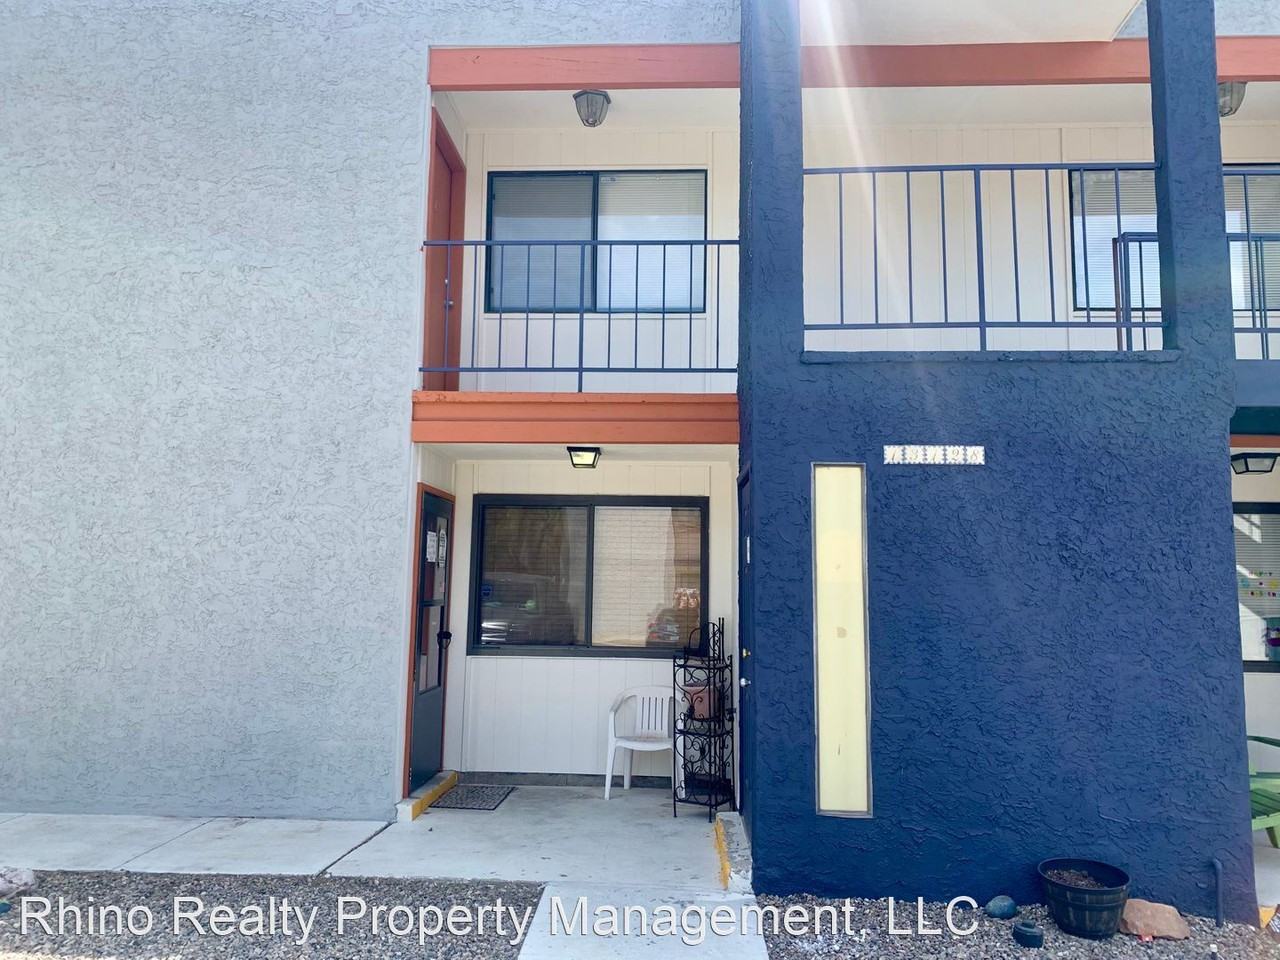 Paradise Hills Civic Apartments for Rent - Albuquerque, NM - 183